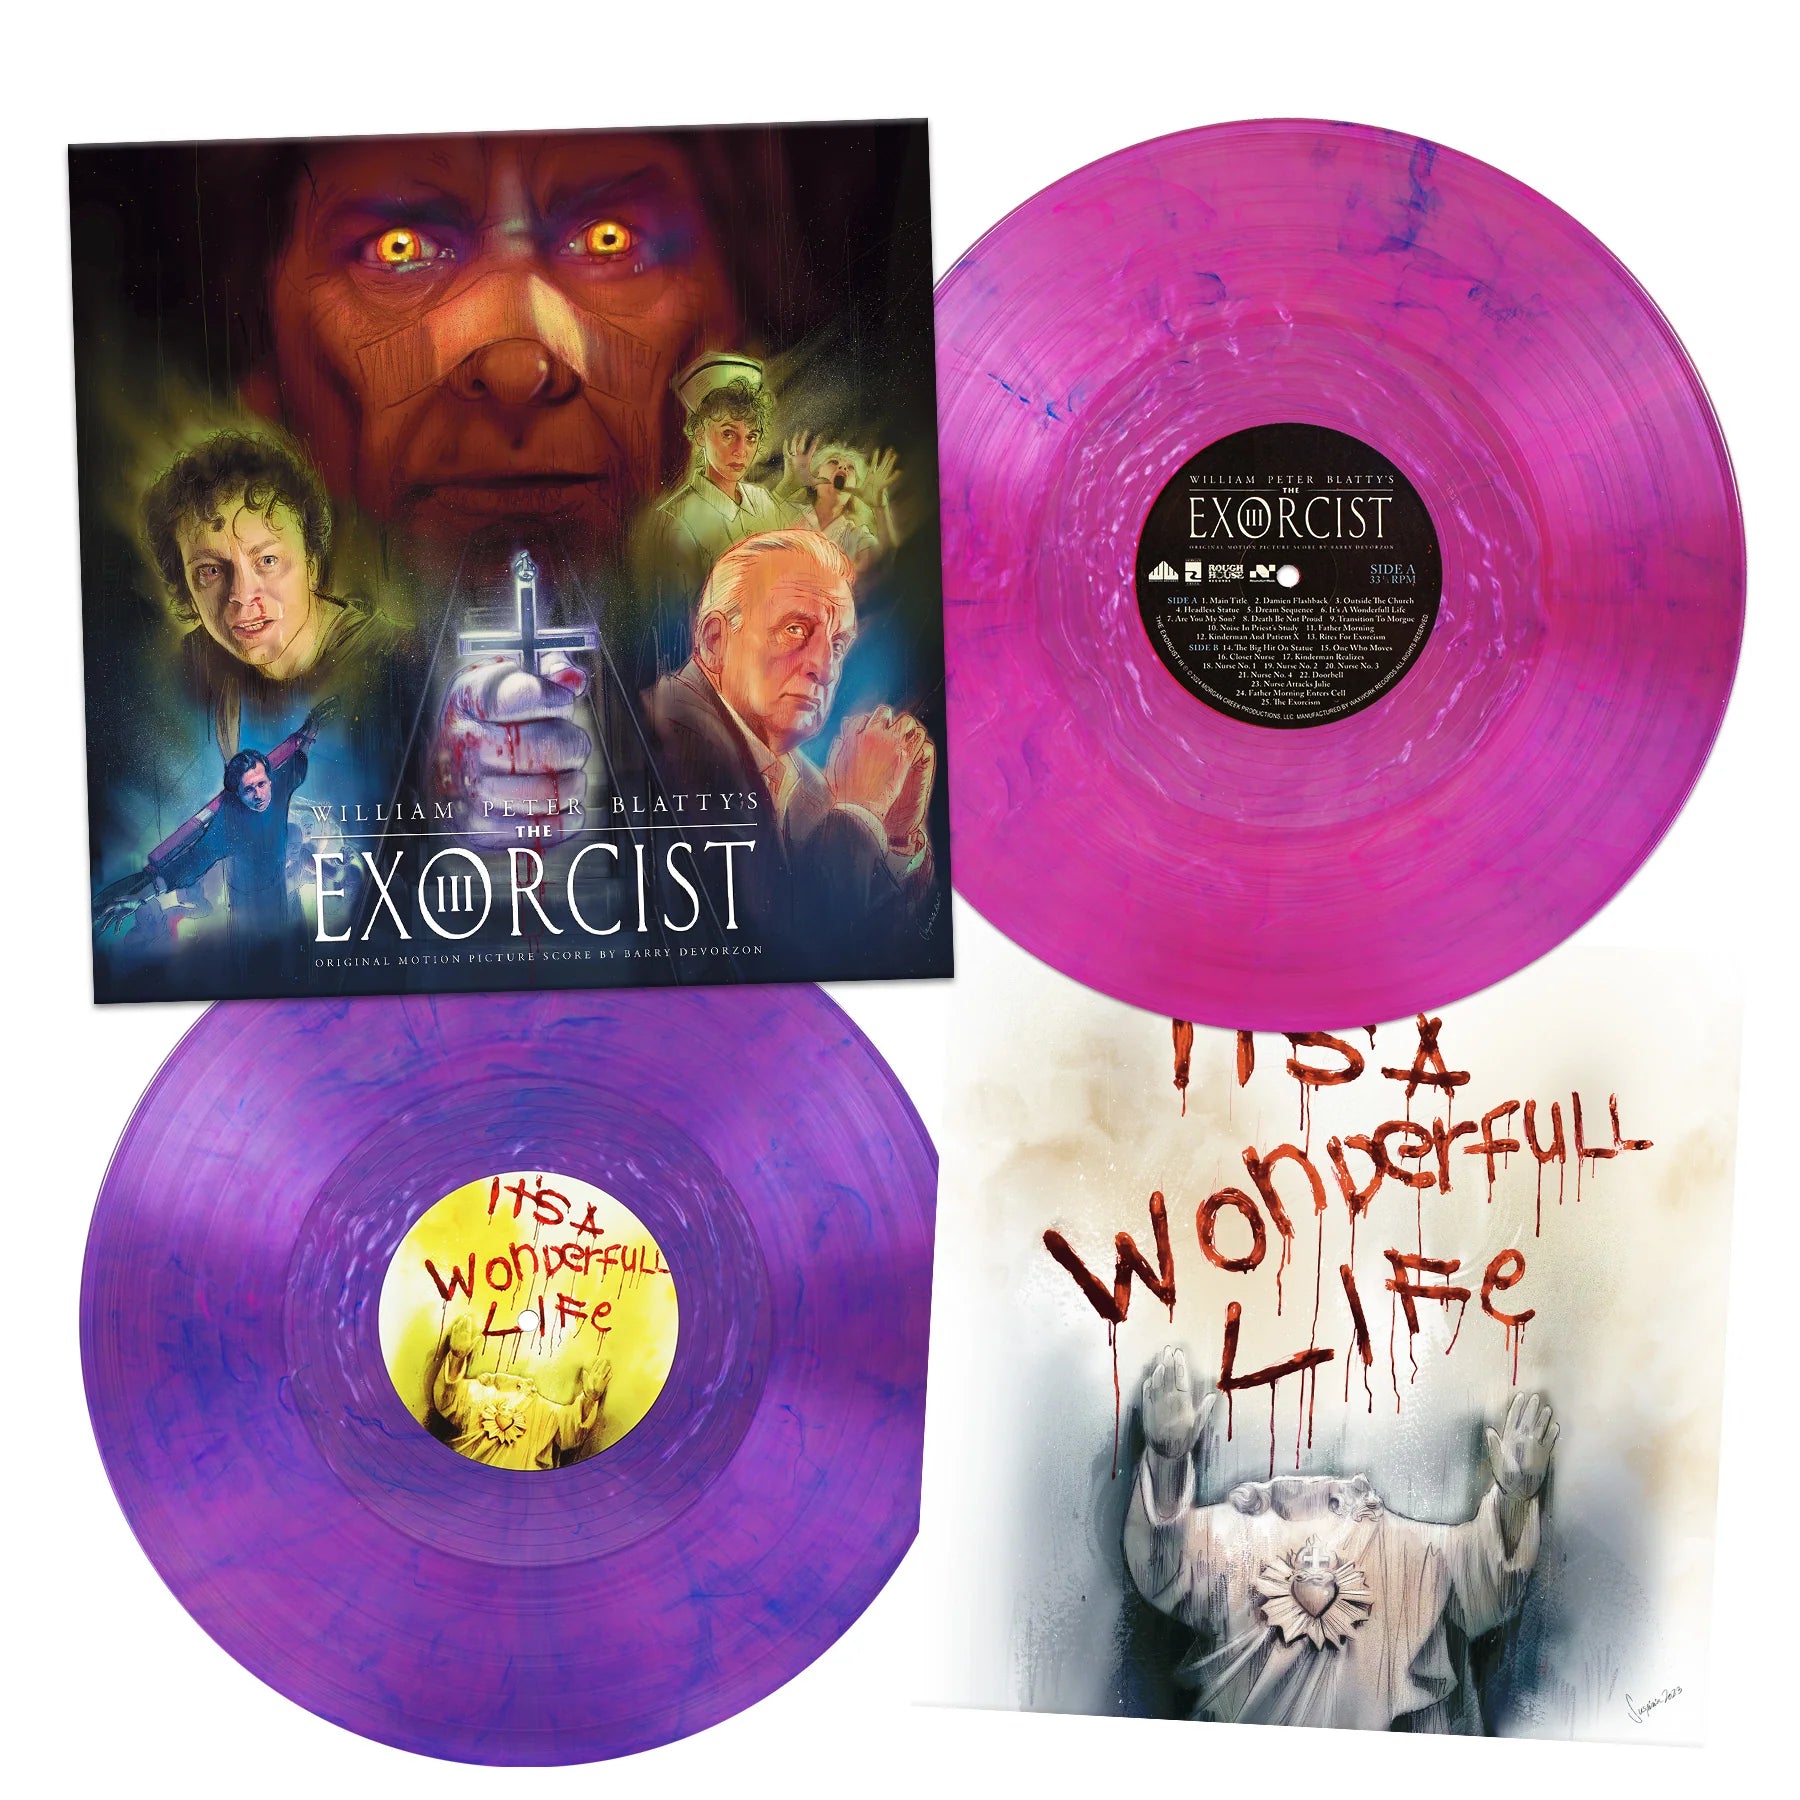 Barry De Vorzon - The Exorcist III (OST): Limited Purple Smoke Vinyl 2LP